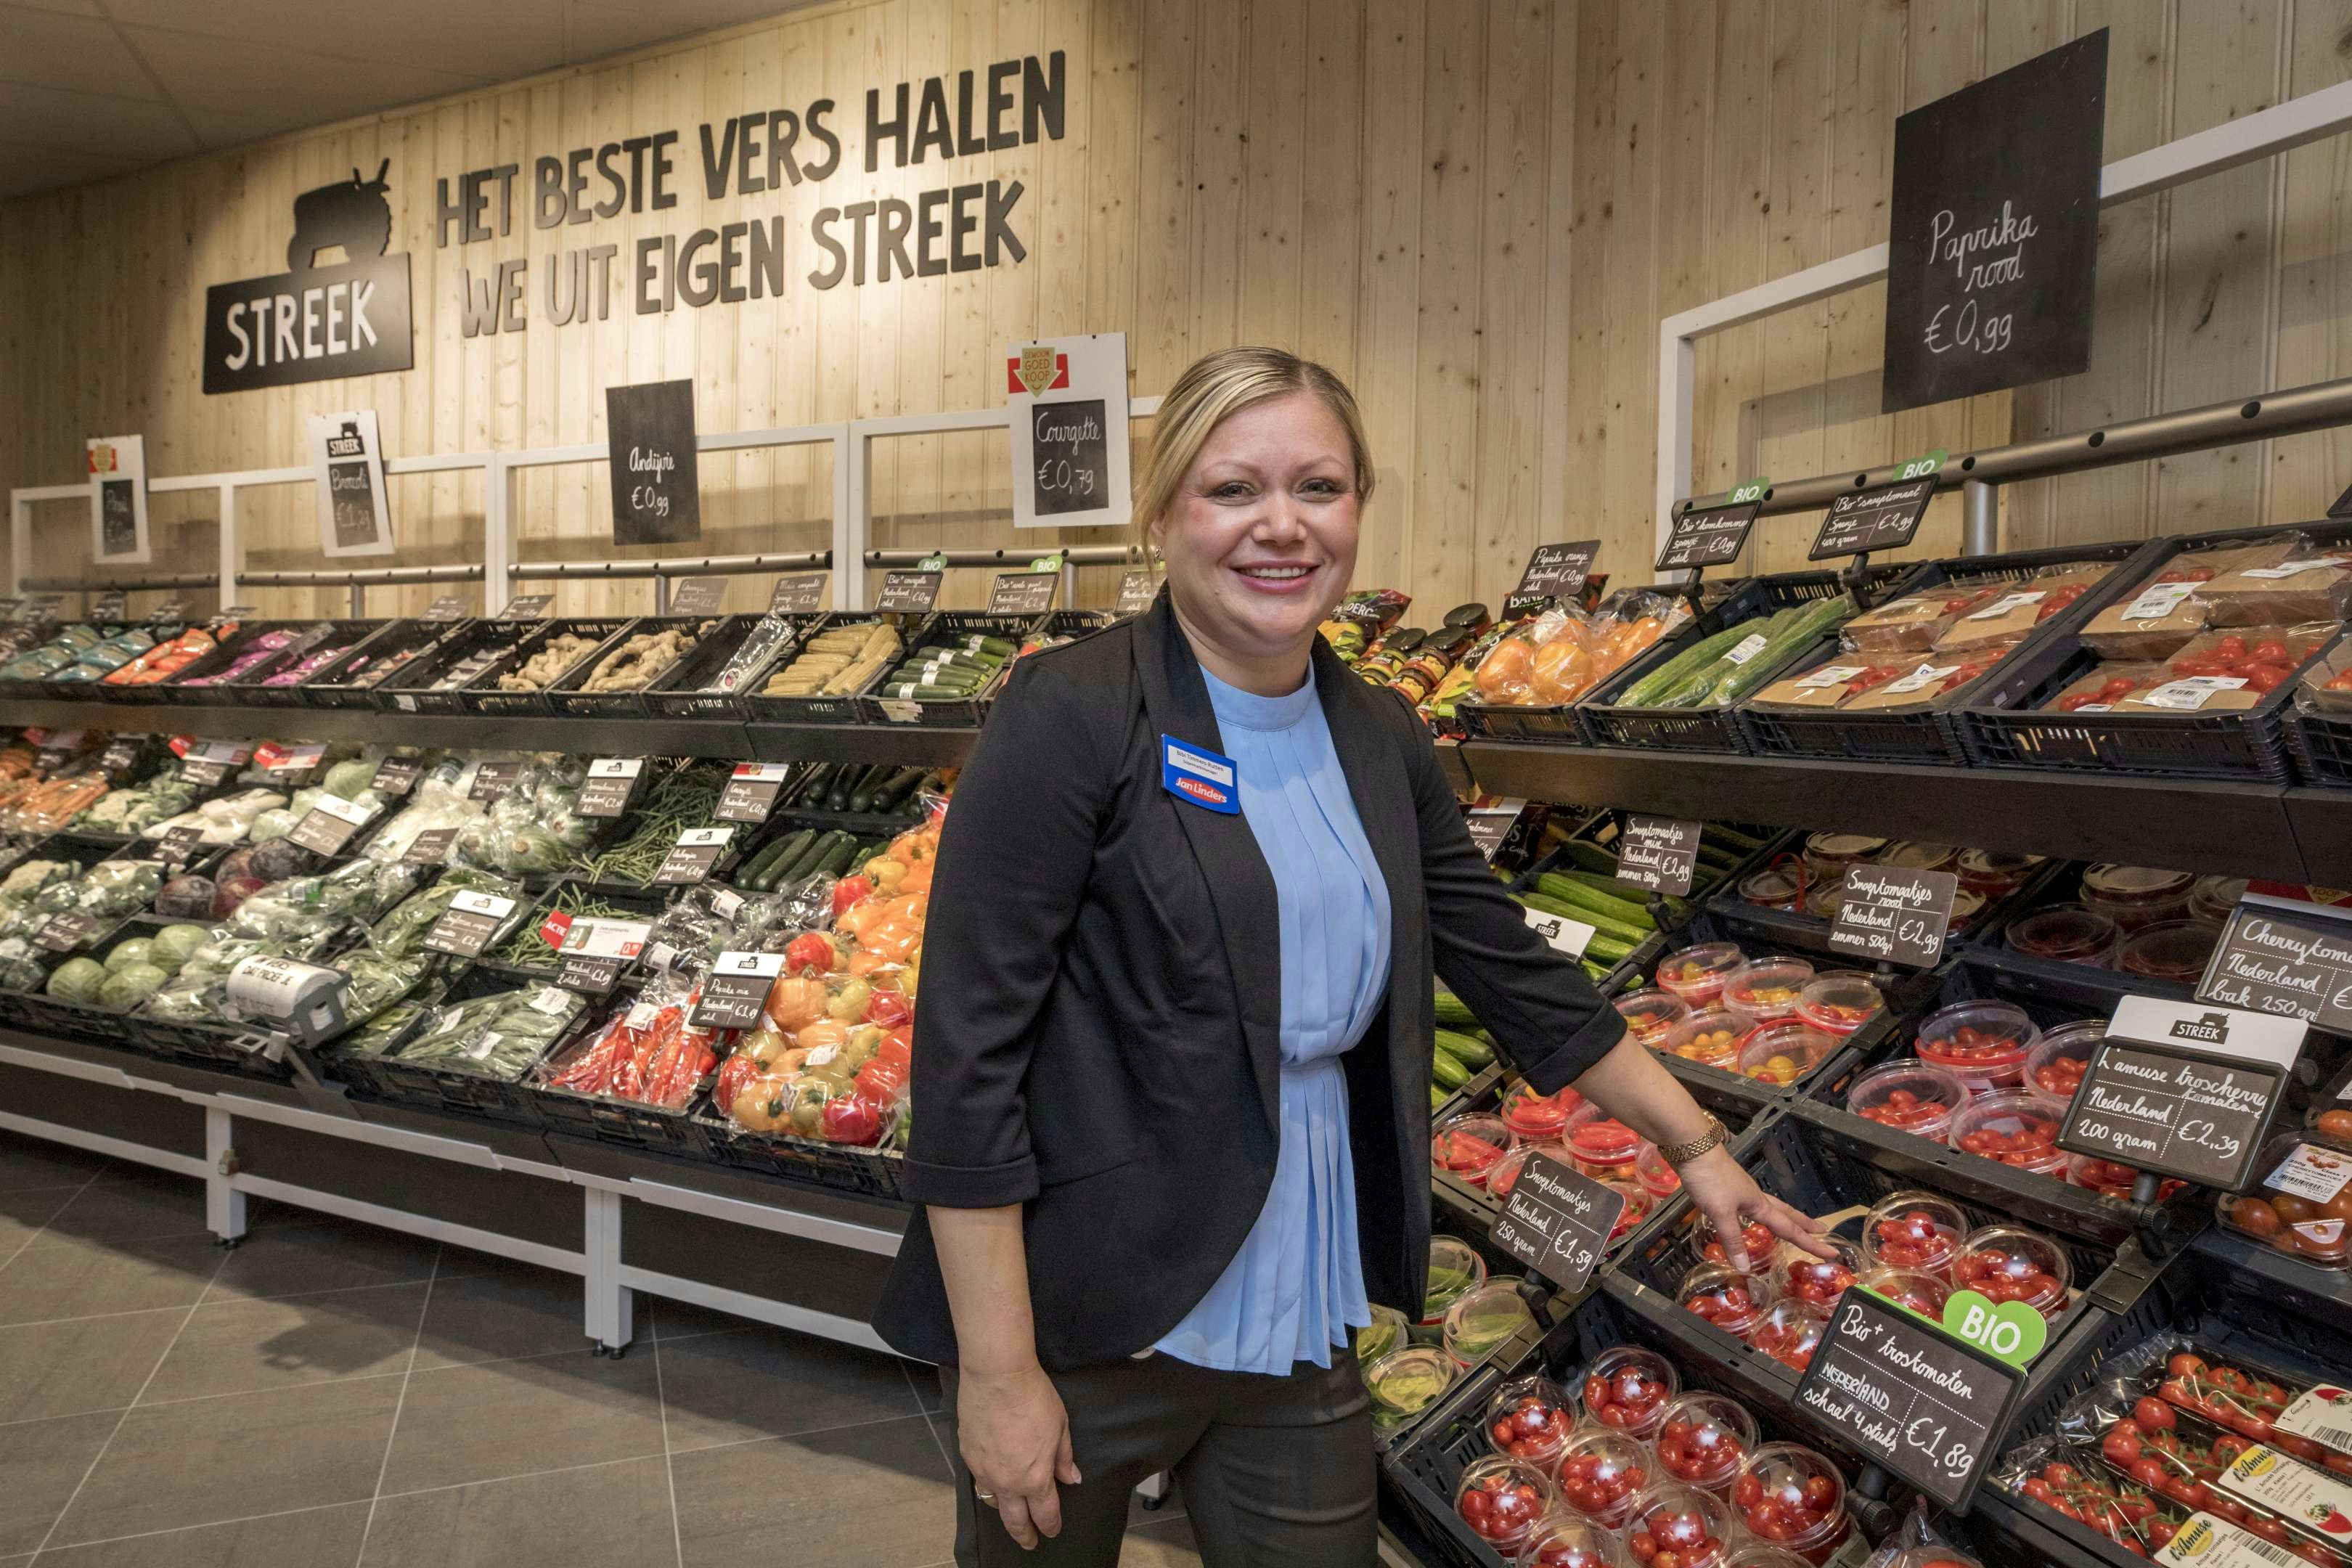 Bibi Timmers uit Gennep is de supermarktmanager. Ze werkt al 19 jaren voor de keten, waarvan 8 als supermarktmanager.  Het tekort aan supermarktmanagers loopt op, aldus Randstad. Foto: Koos Groenewold